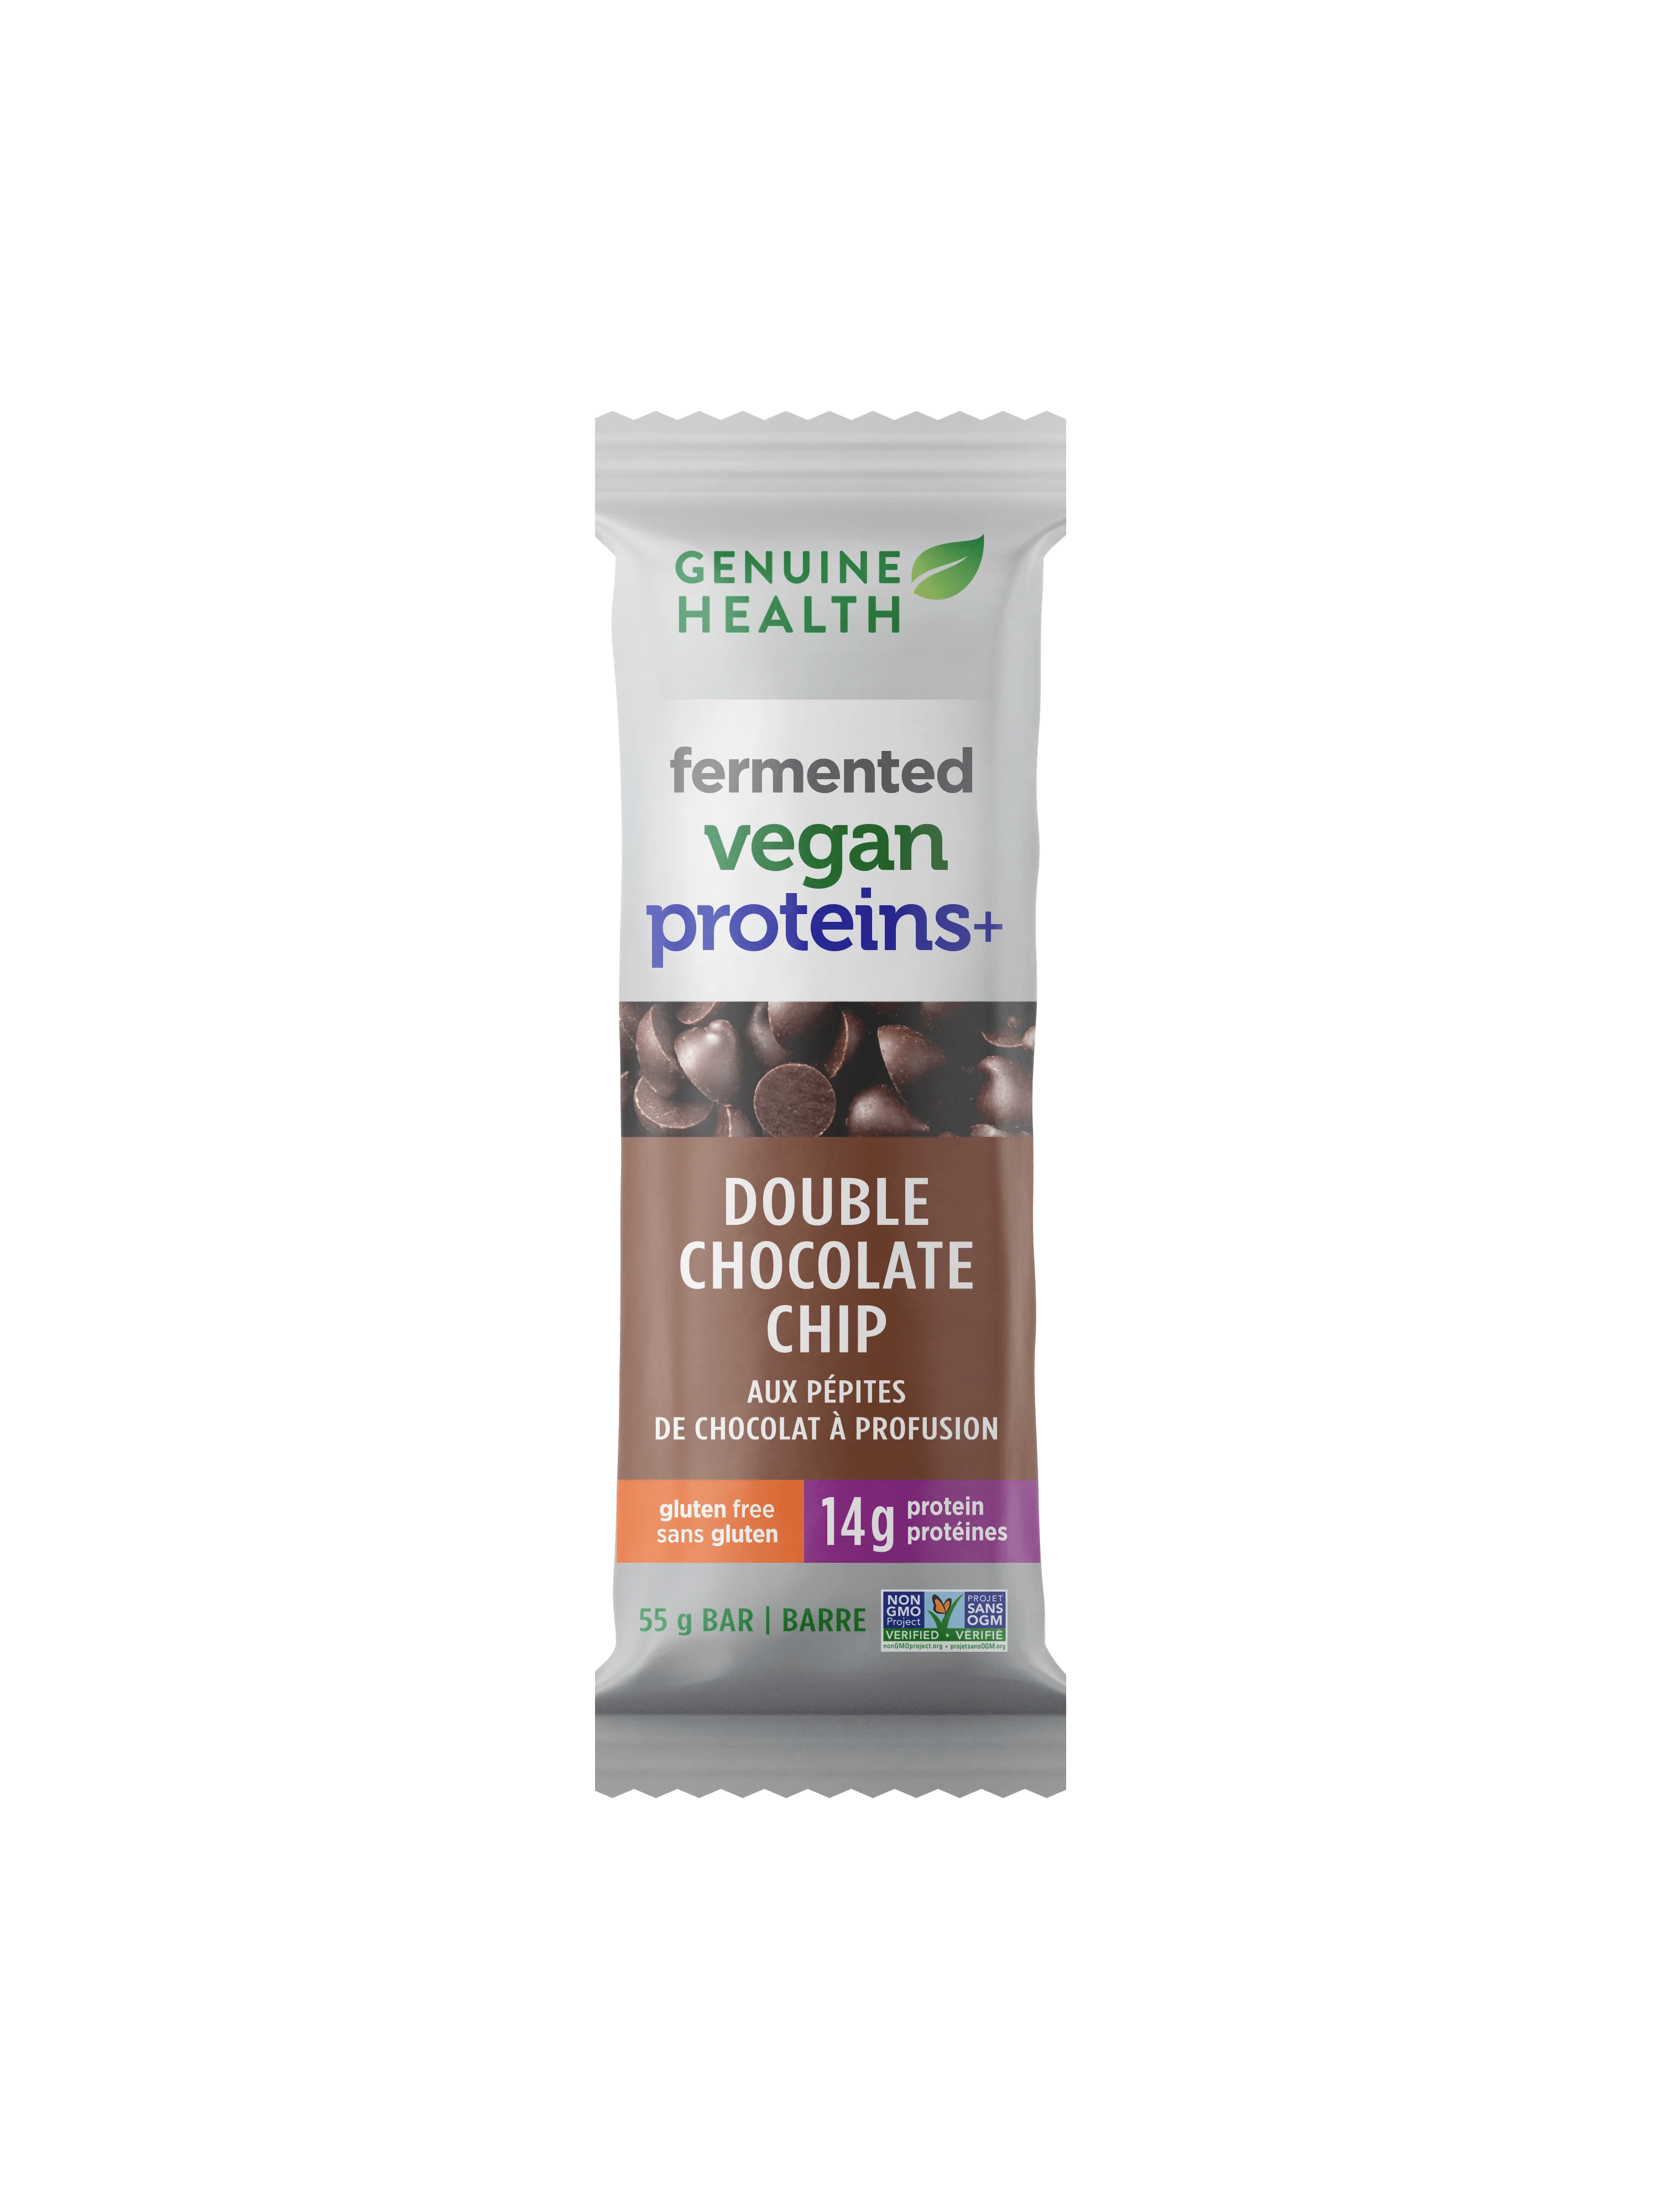 GENUINE HEALTH Épicerie Barre vegan protéinée aux pépites de chocolat 55g